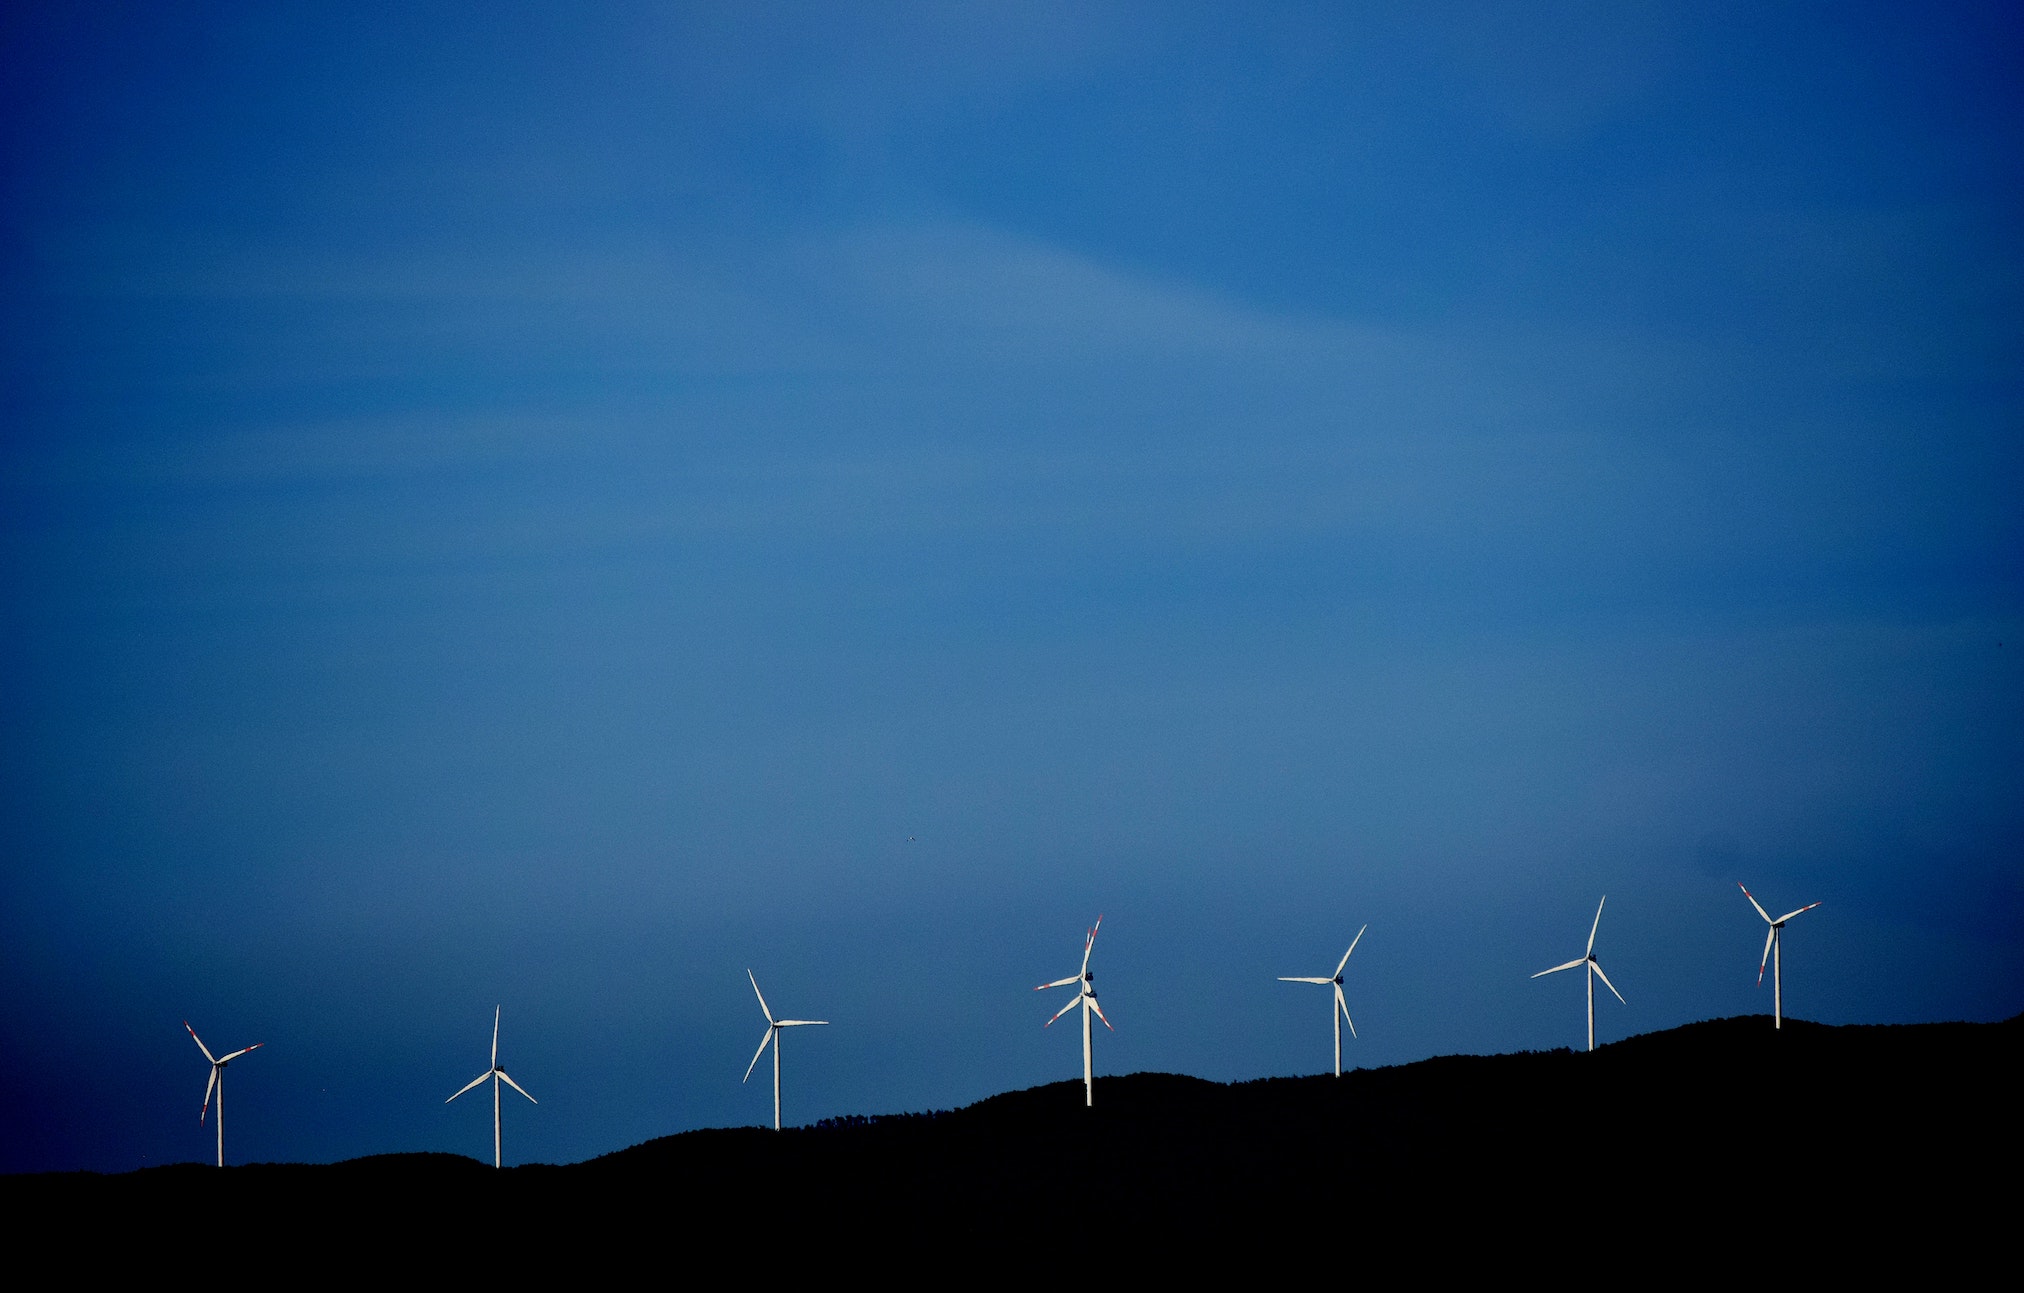 Tejados, renovables y territorio: un debate abierto sobre transición energética